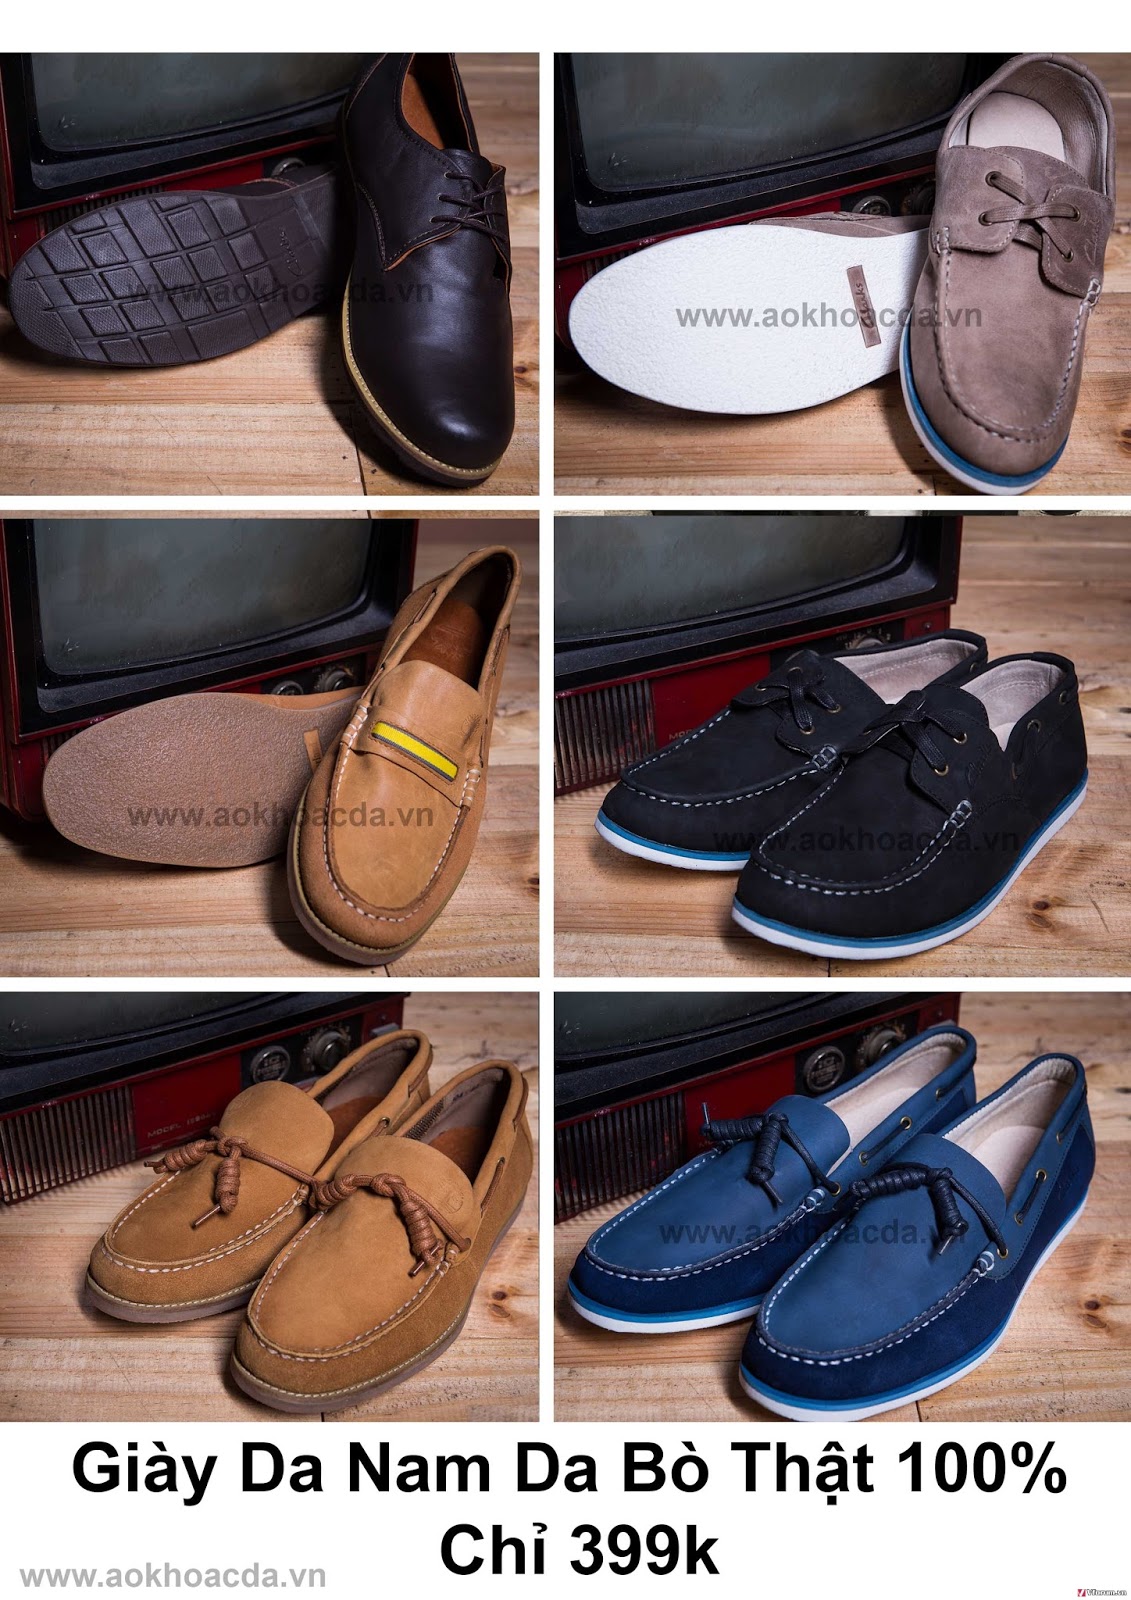 Thời trang nam: Bán áo khoác da và giày da thời trang dành cho nam tại tphcm A8